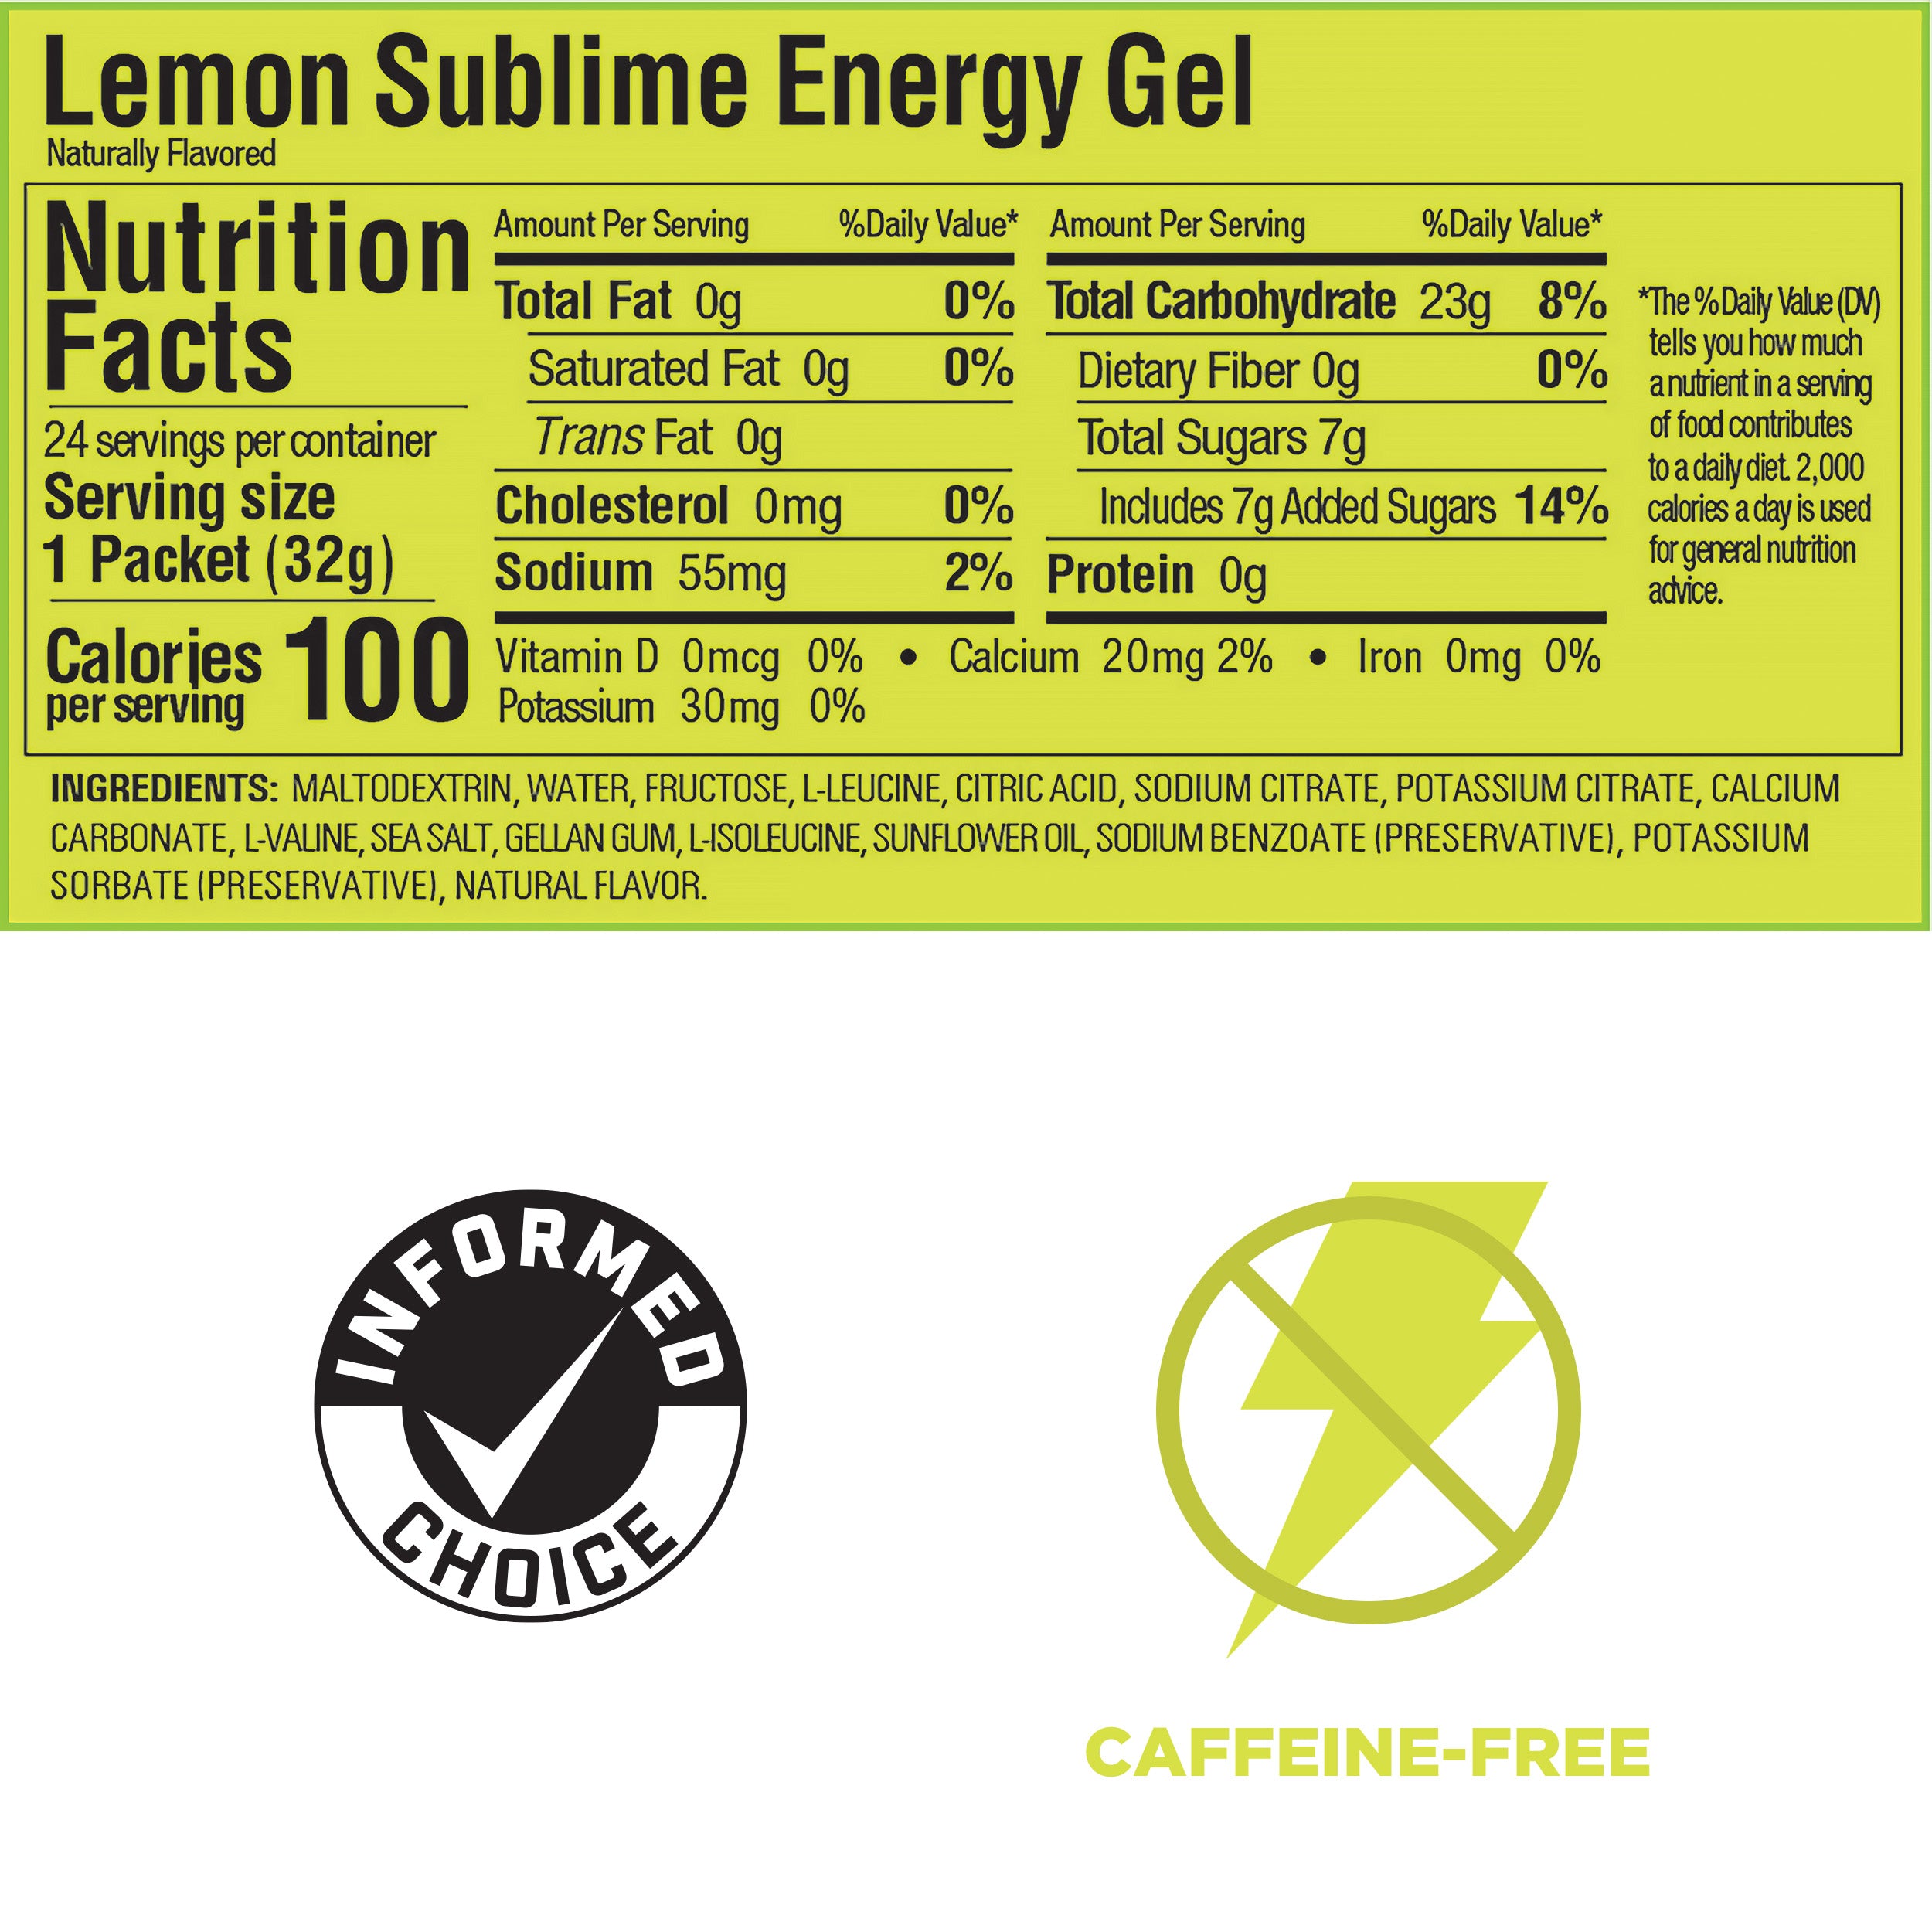 GU Lemon Sublime Energy Gel (Best by: May 2025)